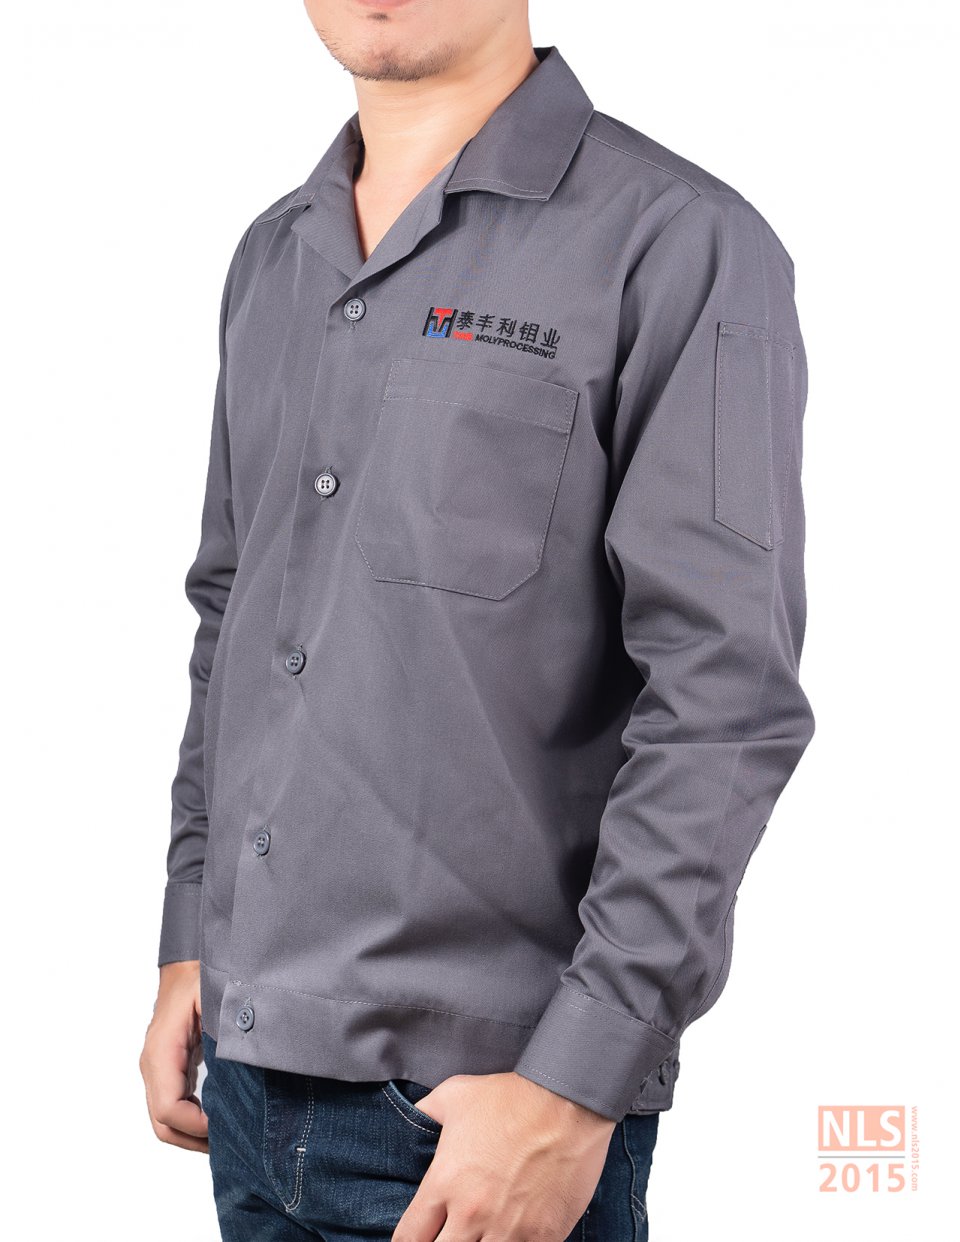 นลินสิริ 2015 จำกัด โรงงานผลิตเสื้อยูนิฟอร์มพนักงาน ชุดทำงานพนักงาน เสื้อช็อป เสื้อช่าง เสื้อเชิ้ต เสื้อโปโลรูปที่ 